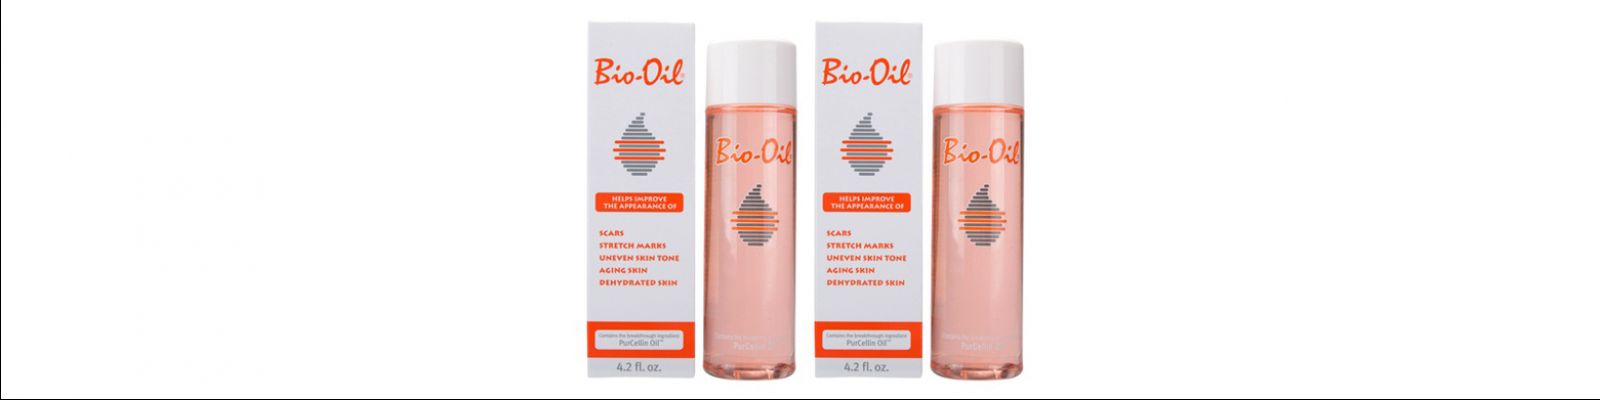 Bi-Oil une solution pour votre peau ?